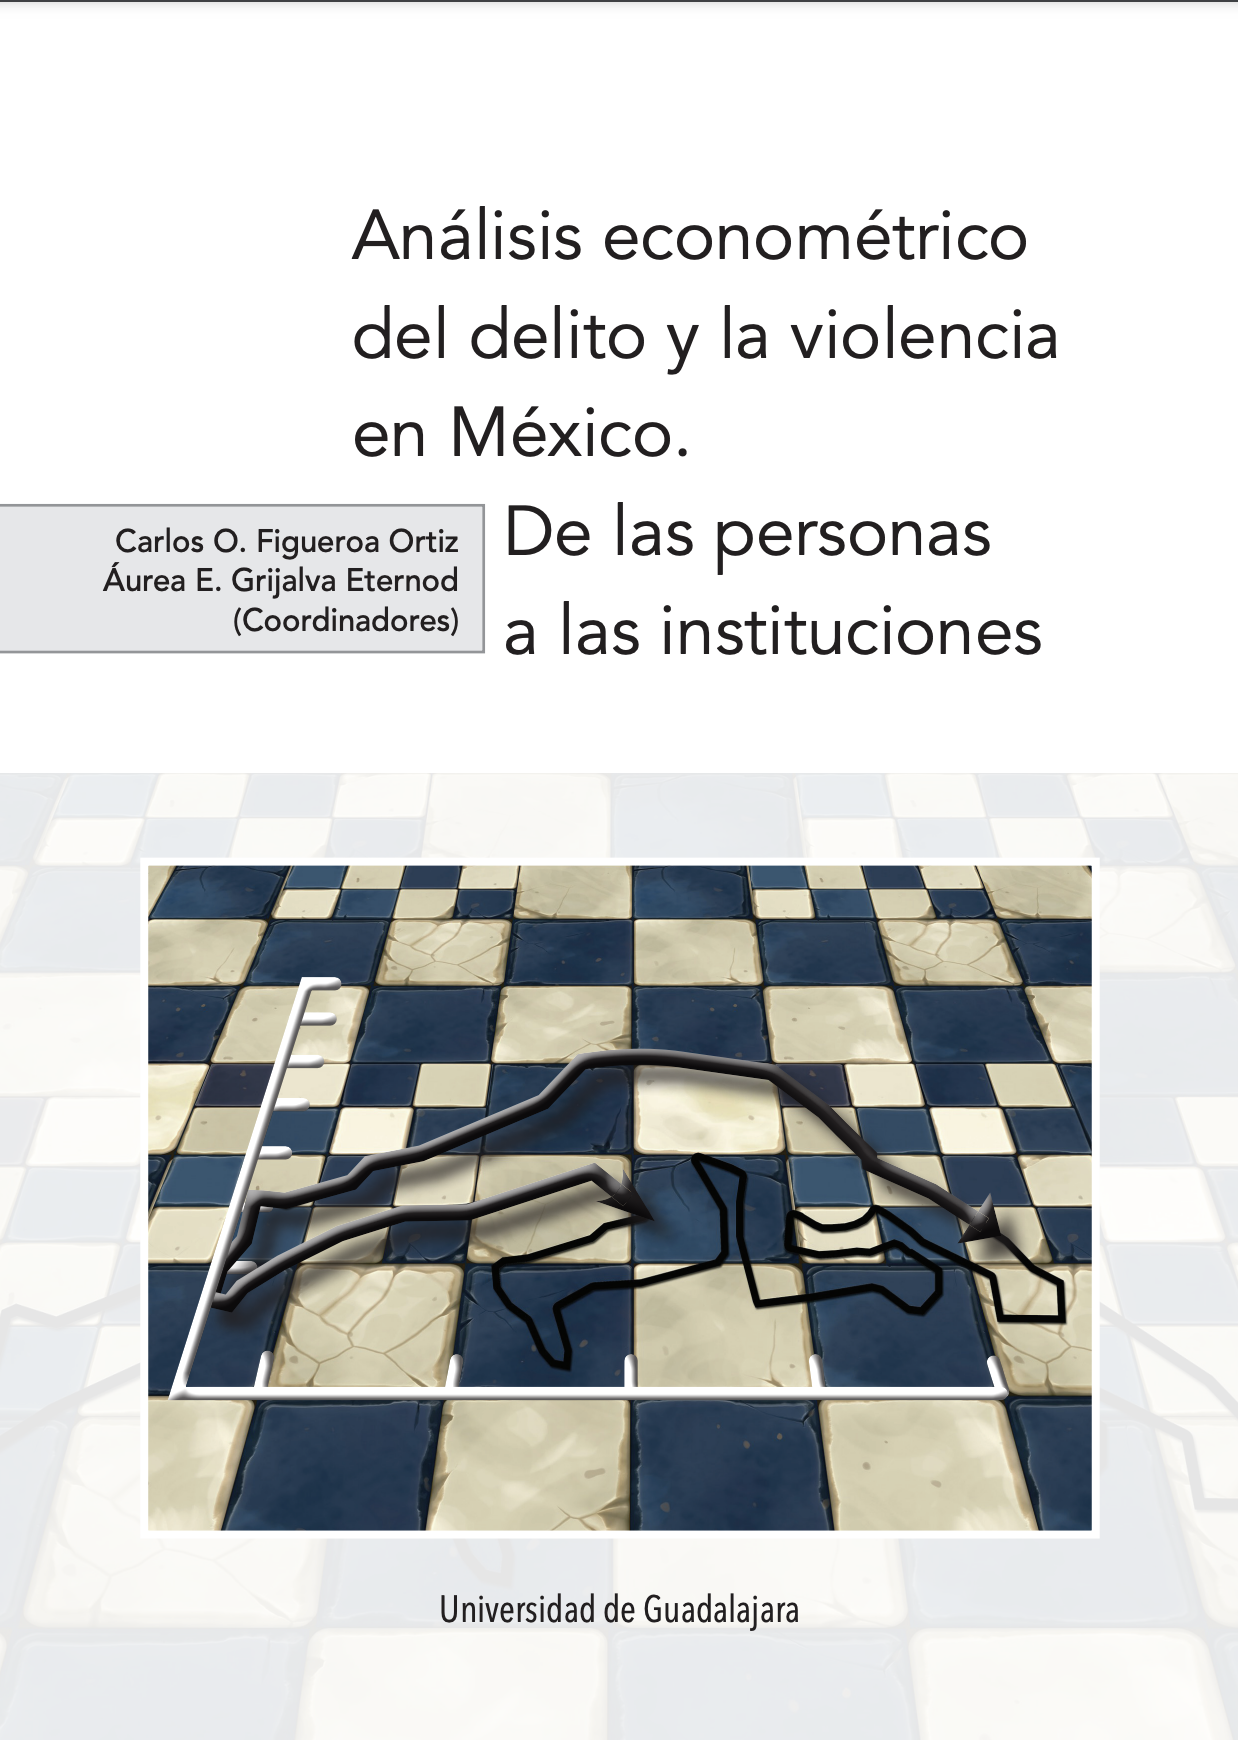 Portada libro Análisis econométrico del delito y la violencia de México.